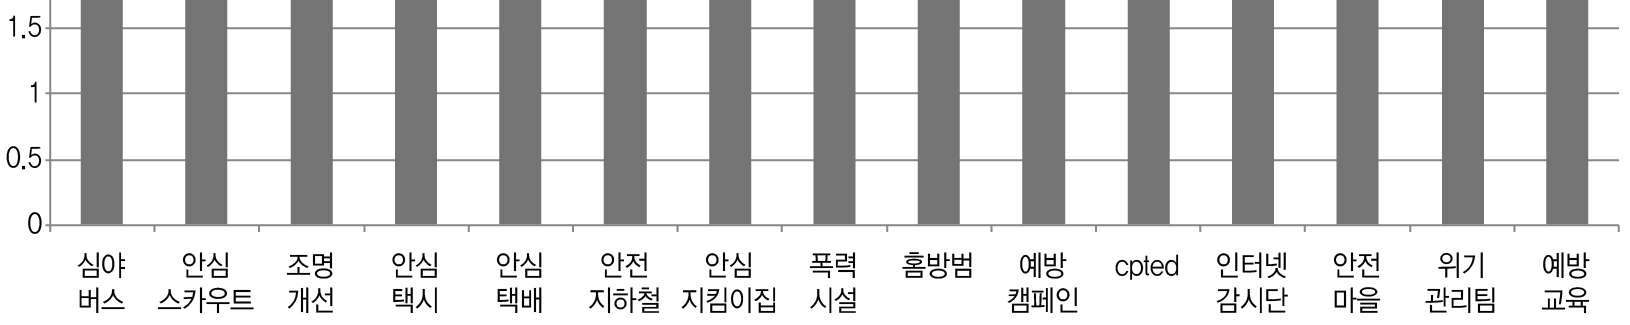 그림 Ⅲ-11 서울시 여성안전 정책 사업별 인지도